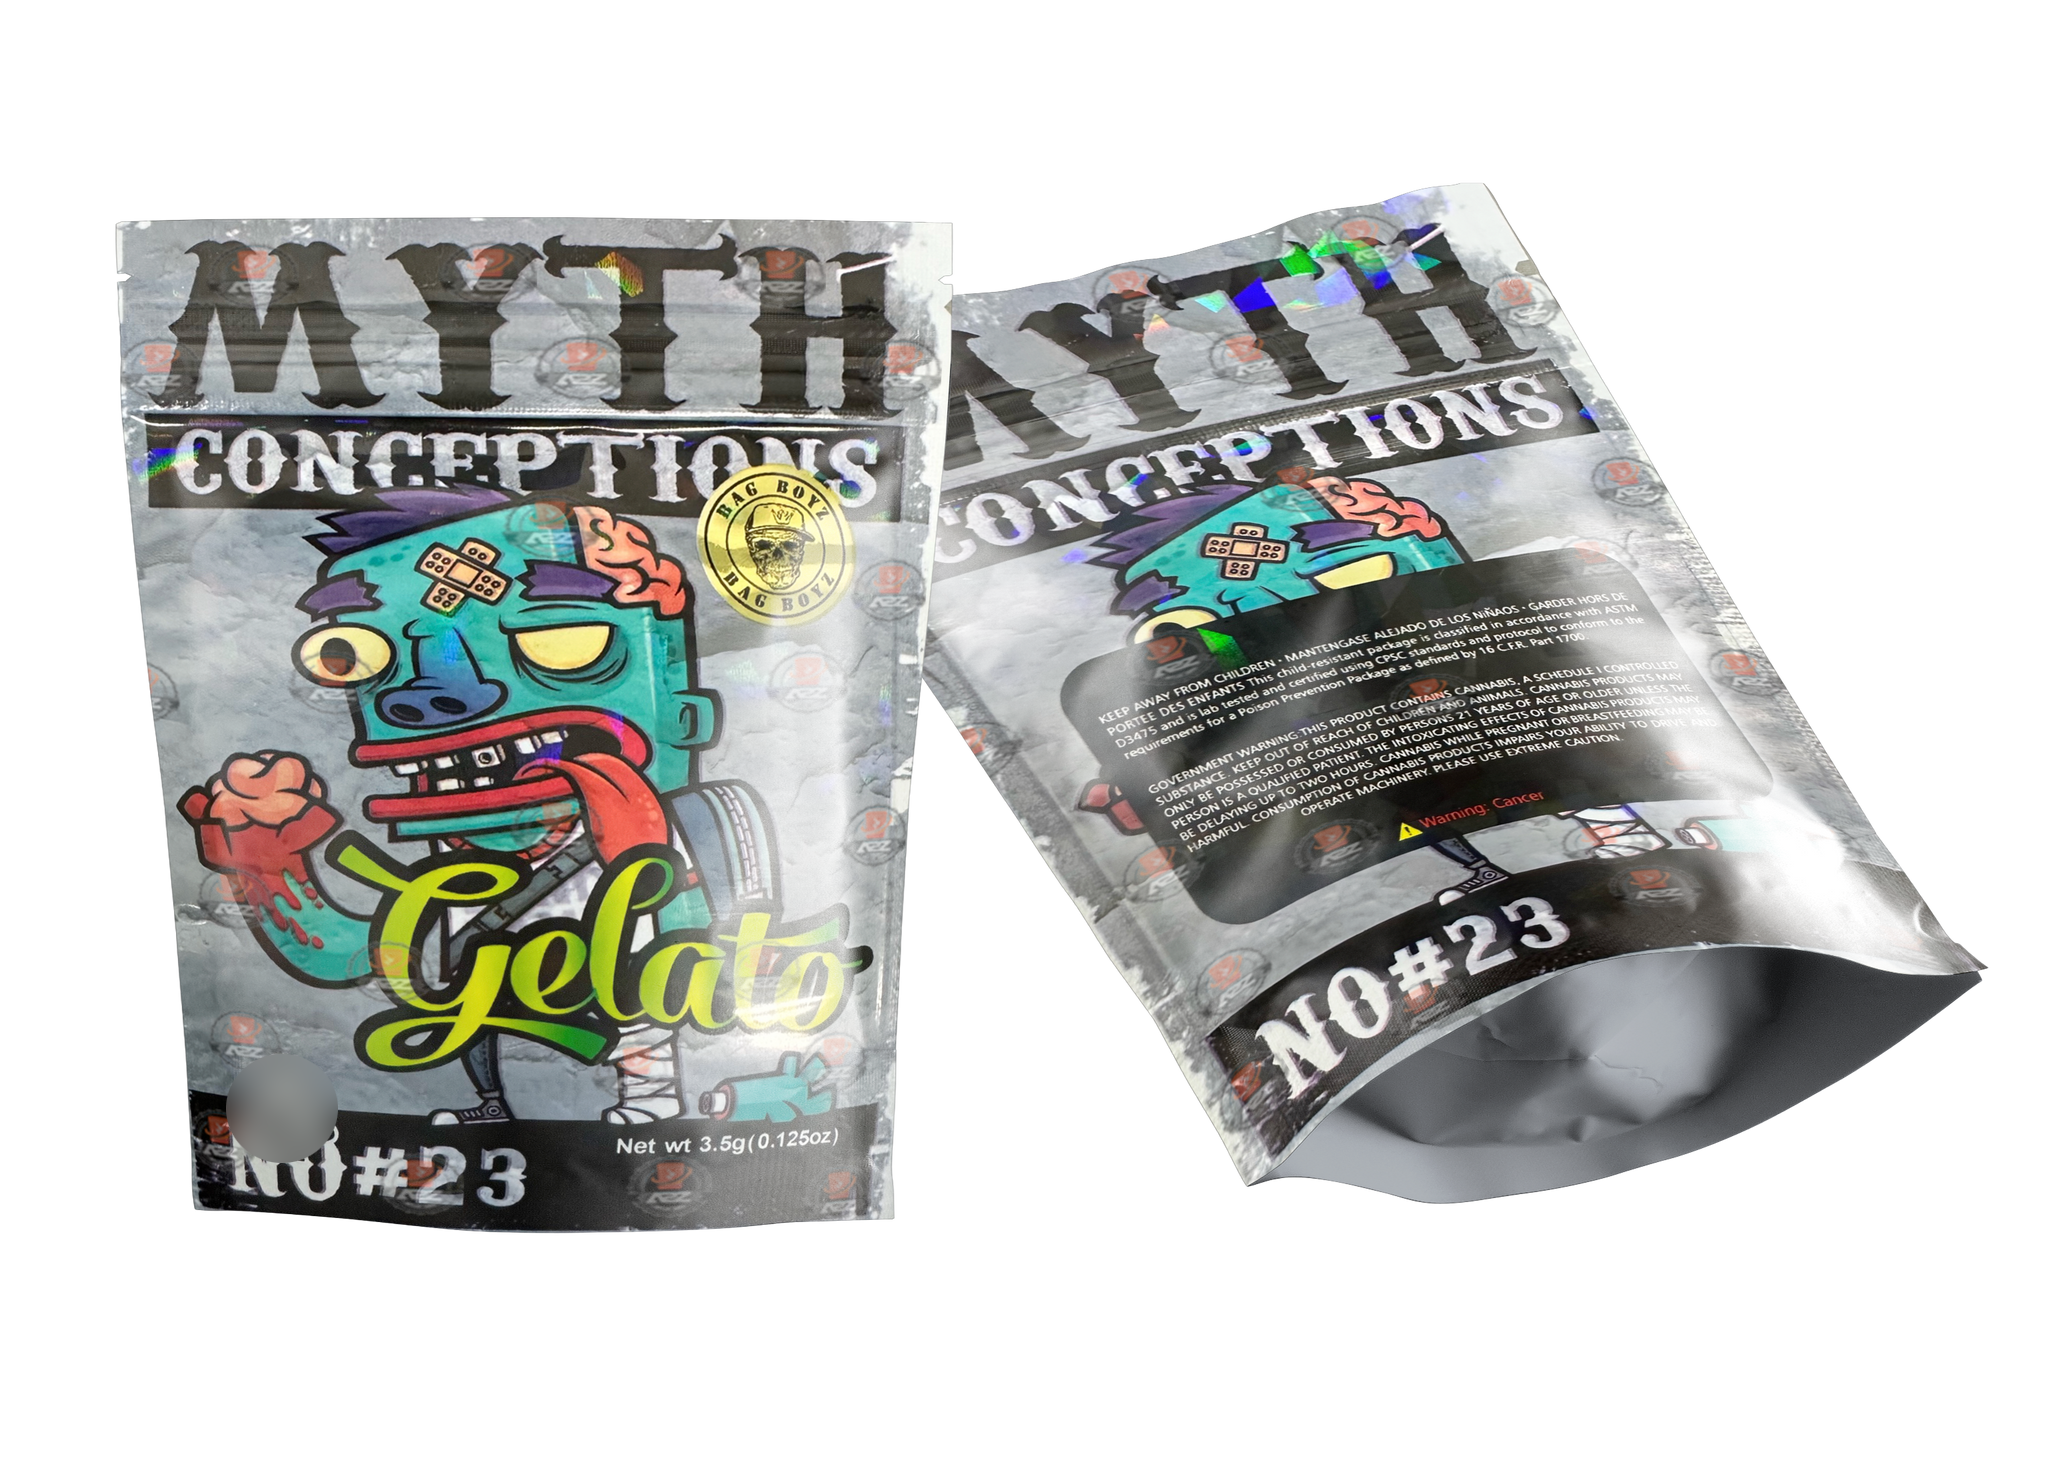 Bag Boyz Gelato Myth Conception No #23 Mylar bags 3.5g Packaging Only